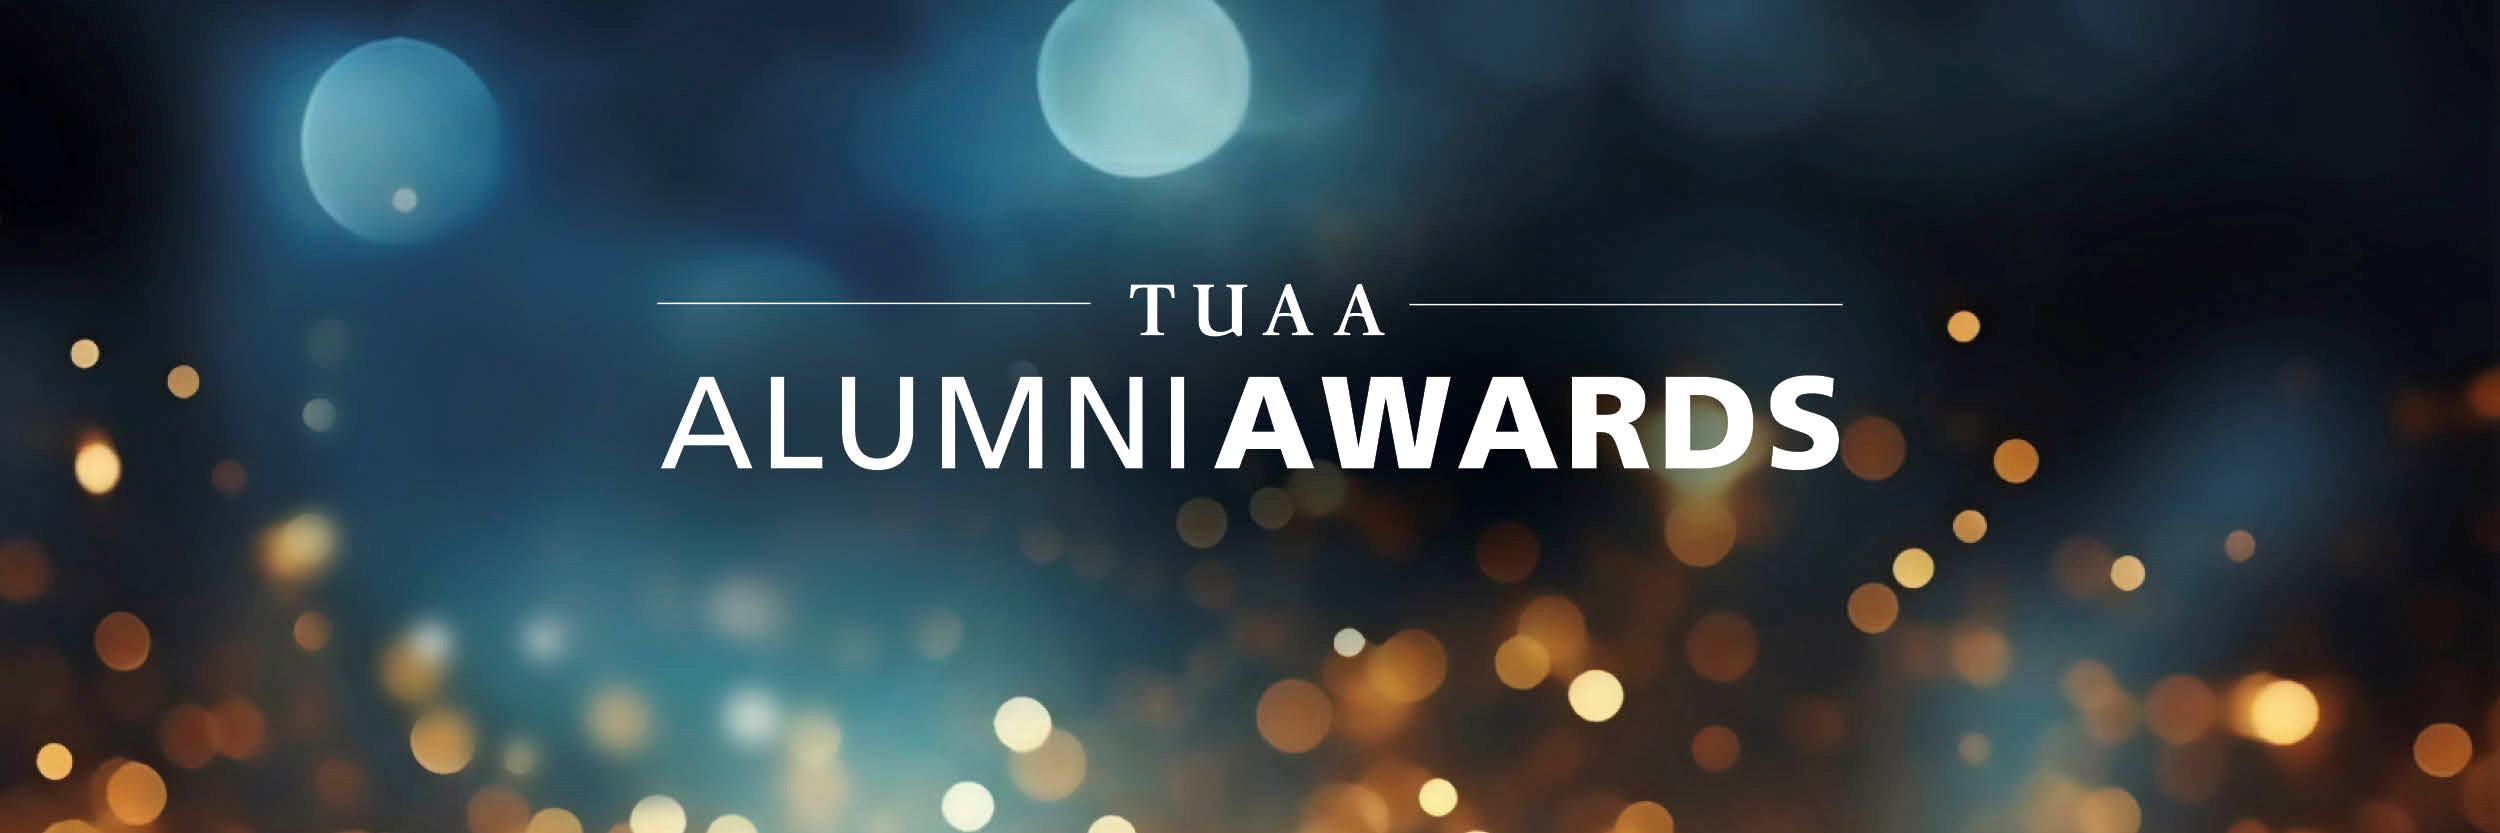 TUAA Alumni Awards